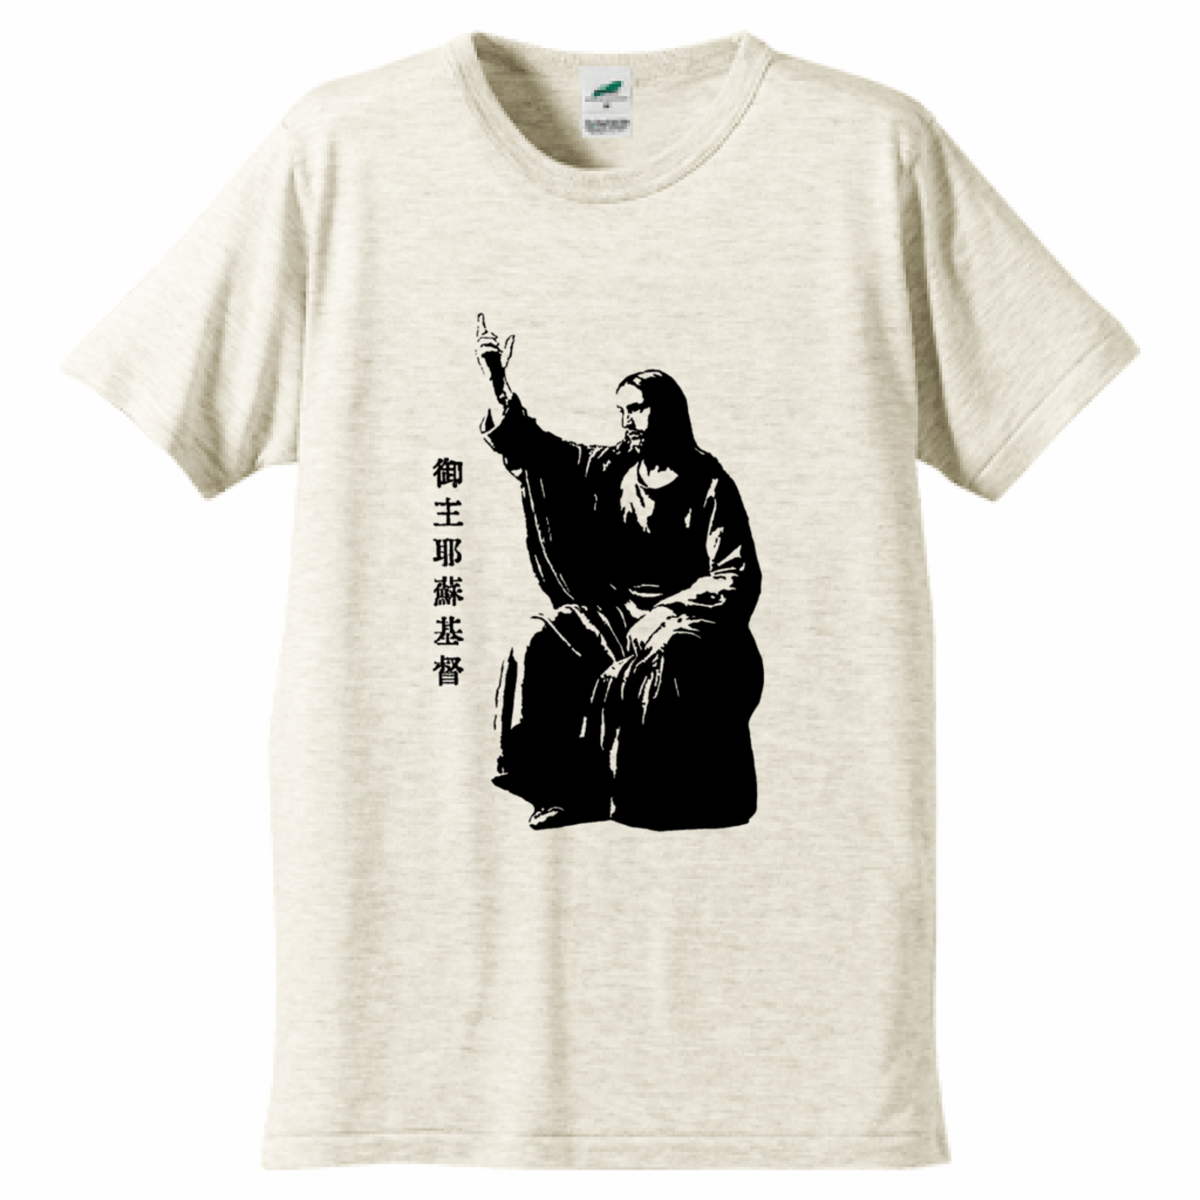 ナザレのイエス パレスティナ ユダヤ キリスト教 歴史人物トライブレンドtシャツ117 帝都tシャツ店